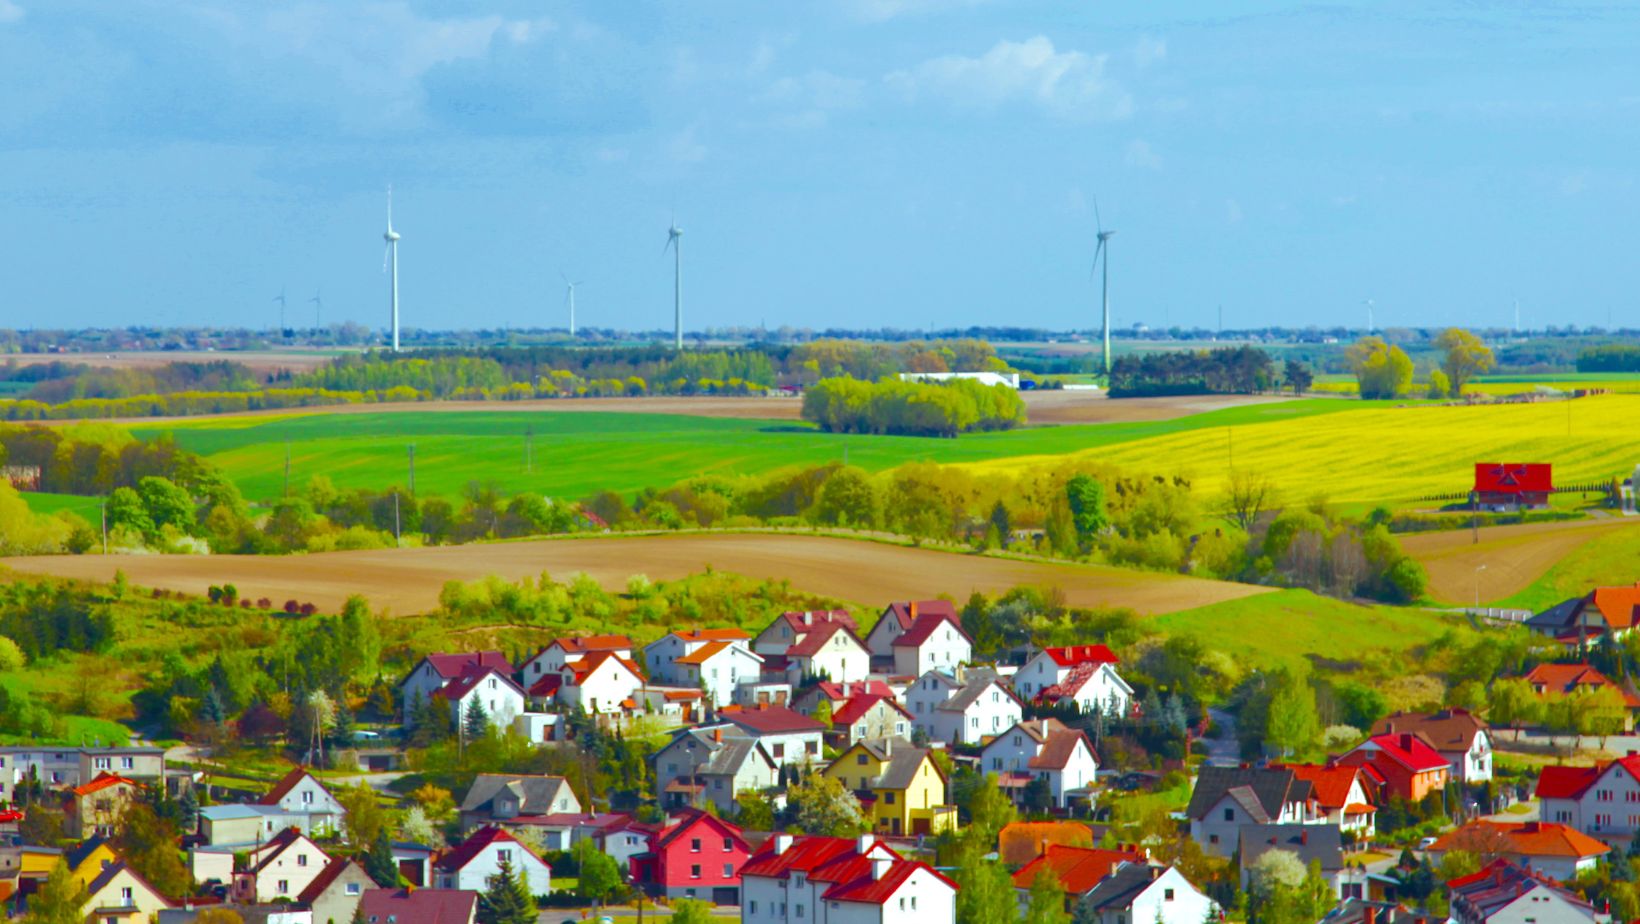 Man sieht eine kleine Stadt im Vordergrund vor weiten Feldern mit blauem Himmel und einigen Windenergieanlagen im Hintergrund.